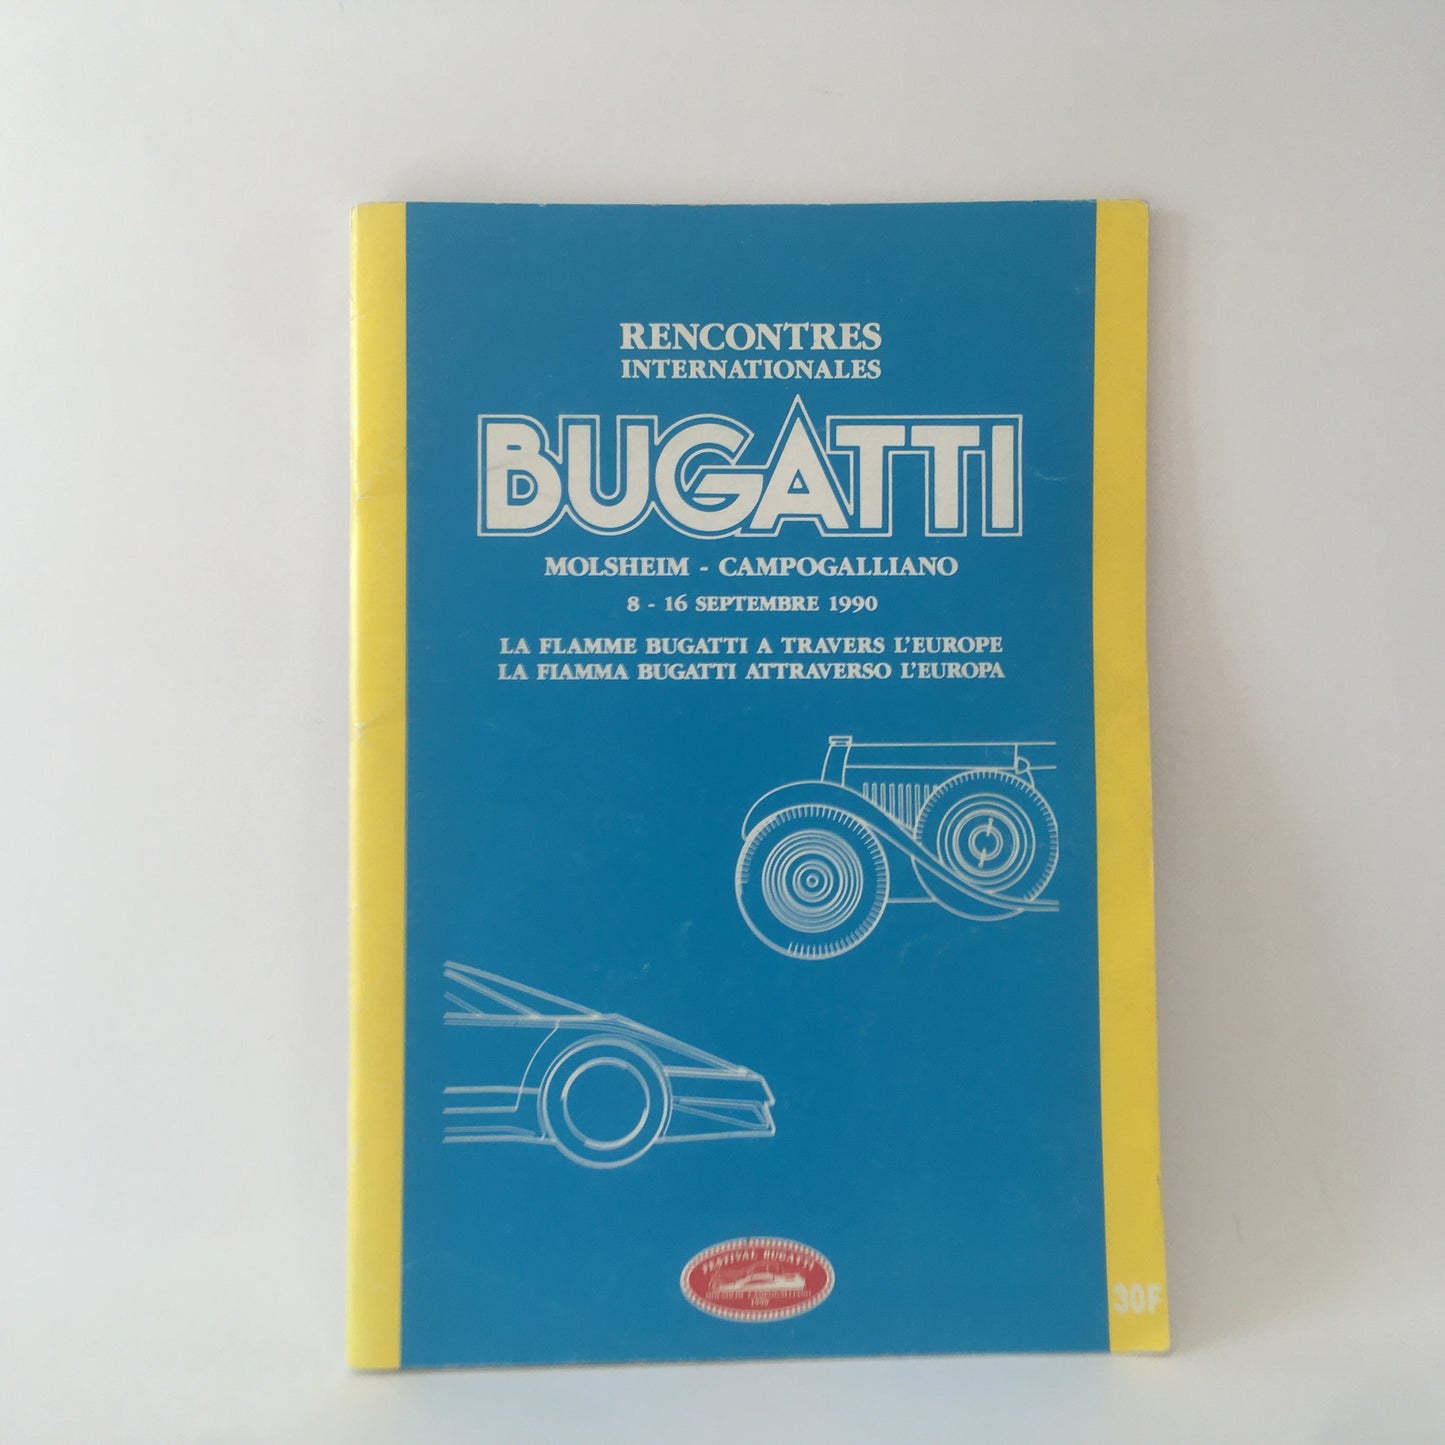 Bugatti, Brochure Rencontres Internationales Bugatti Molsheim - Campogalliano 8 - 16 Septembre 1990